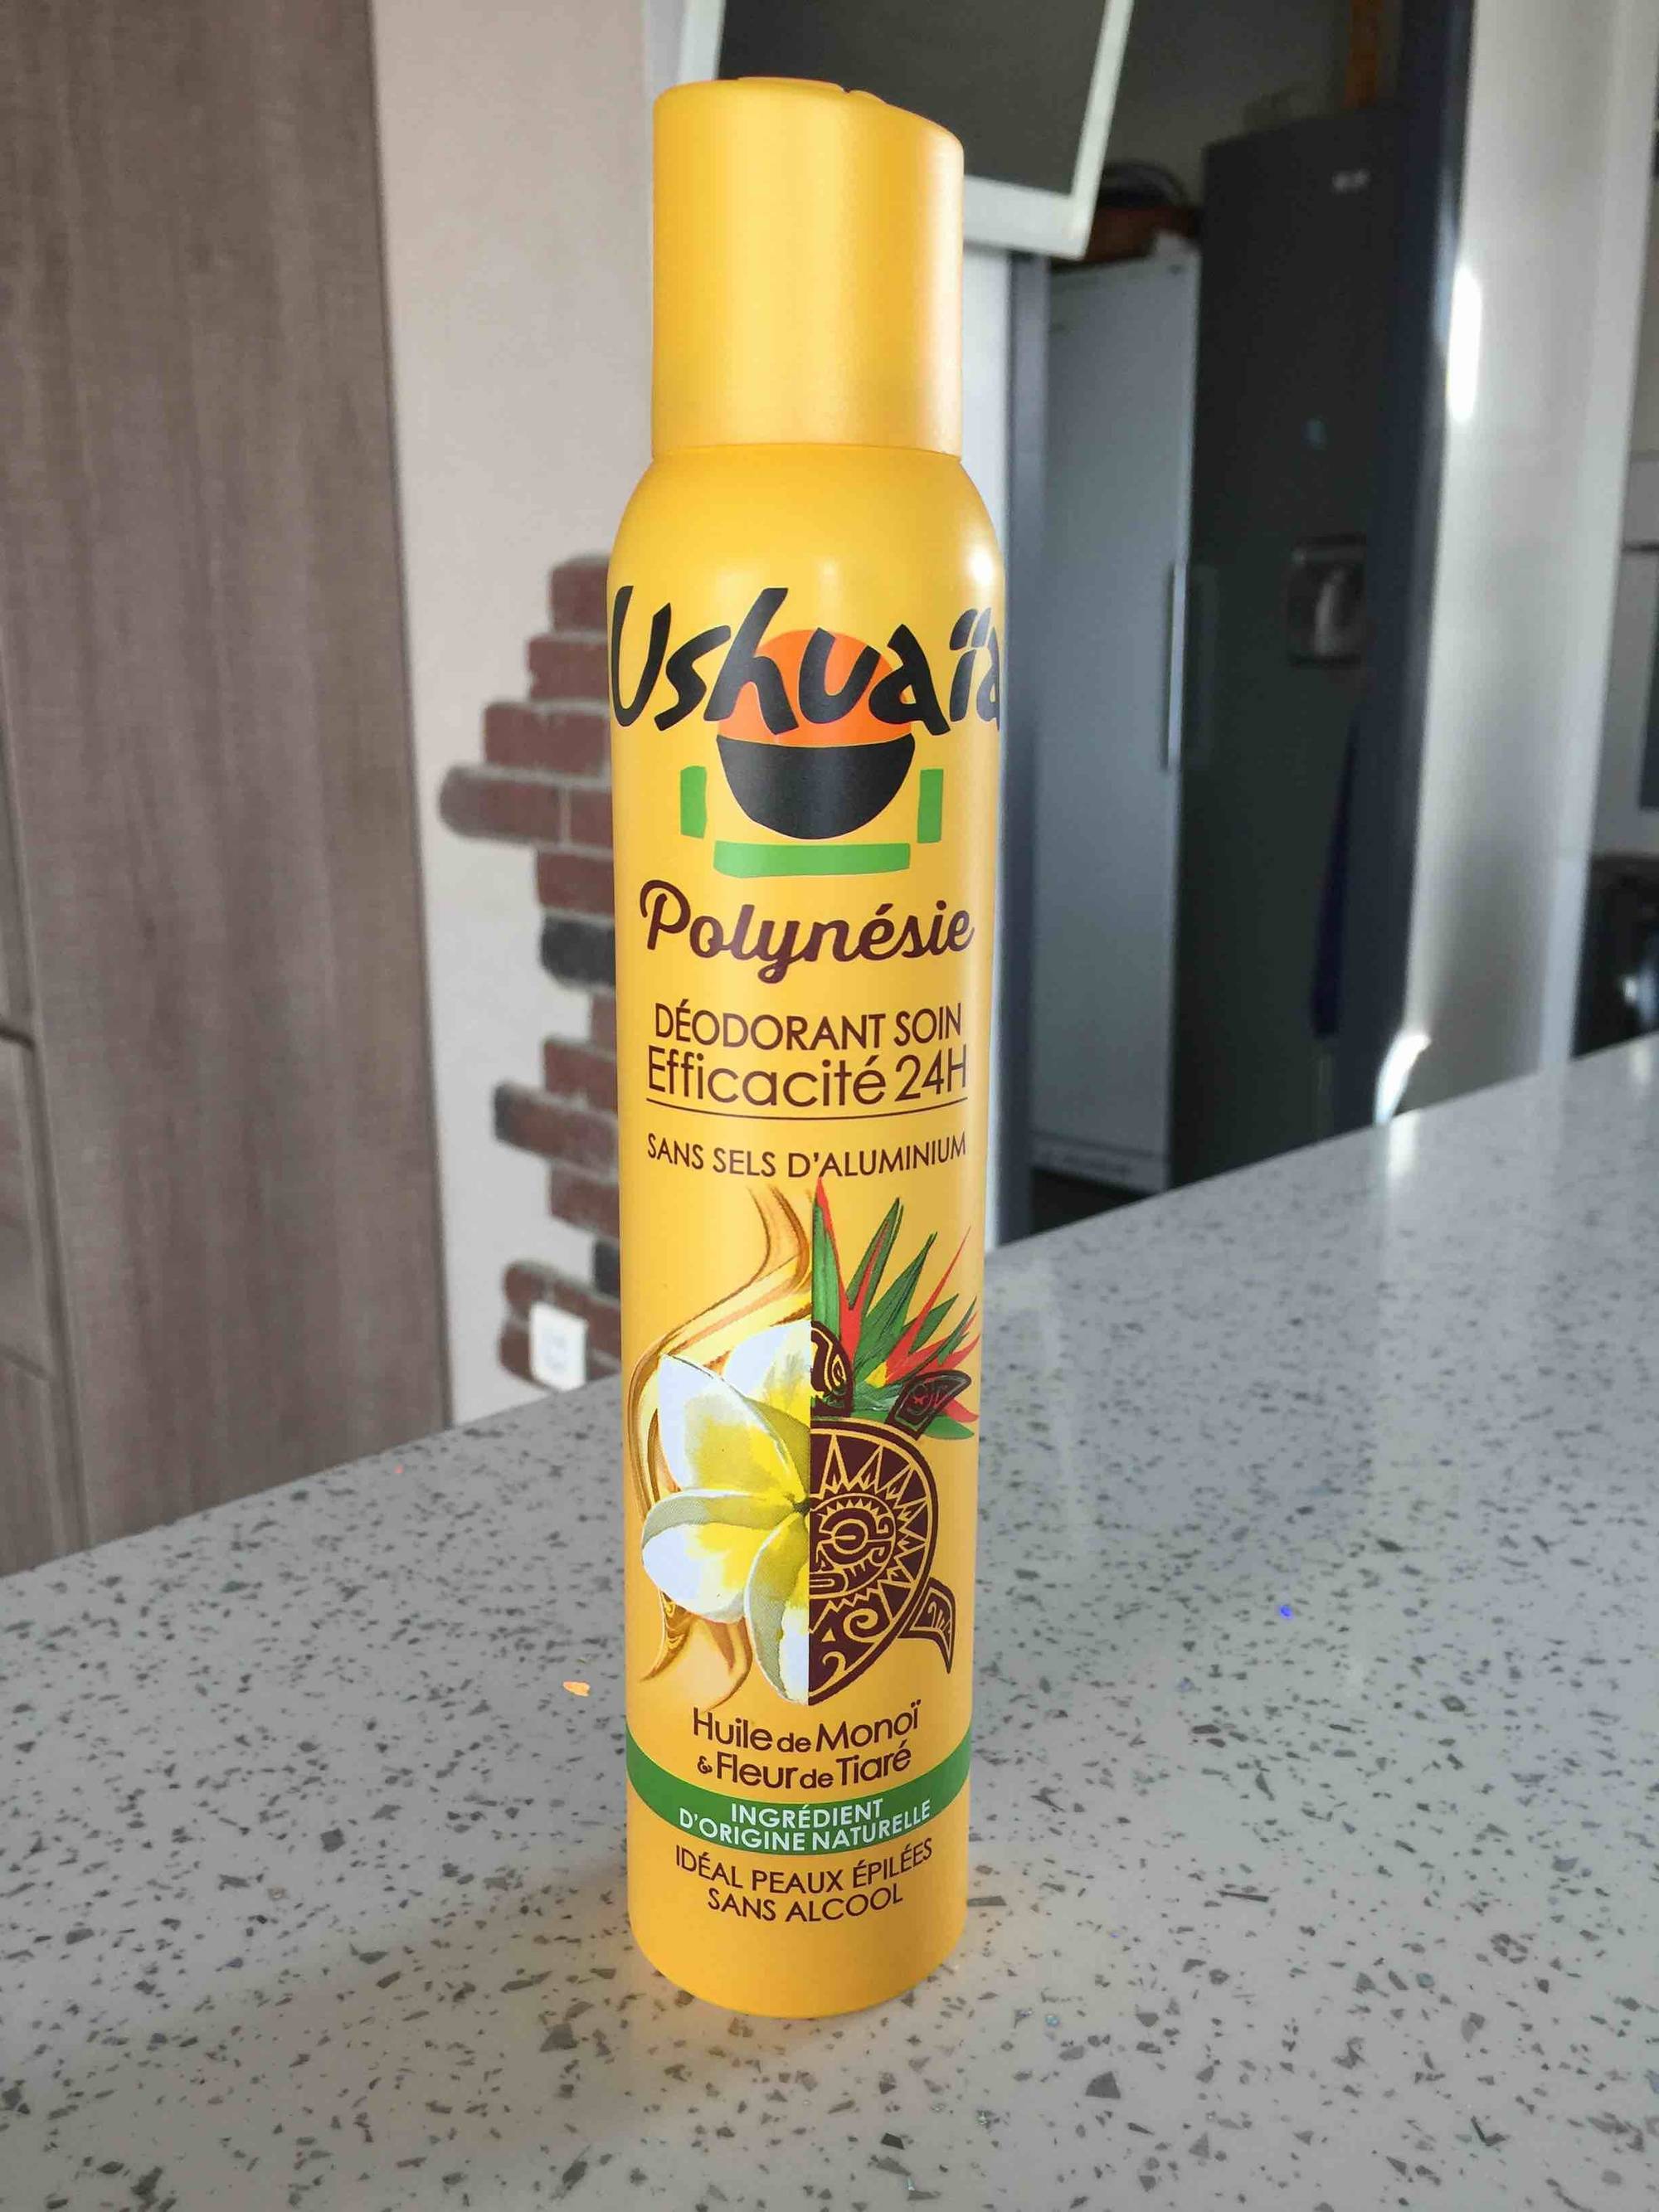 USHUAÏA - Polynésie - Déodorant soin à l'huile de monoï 